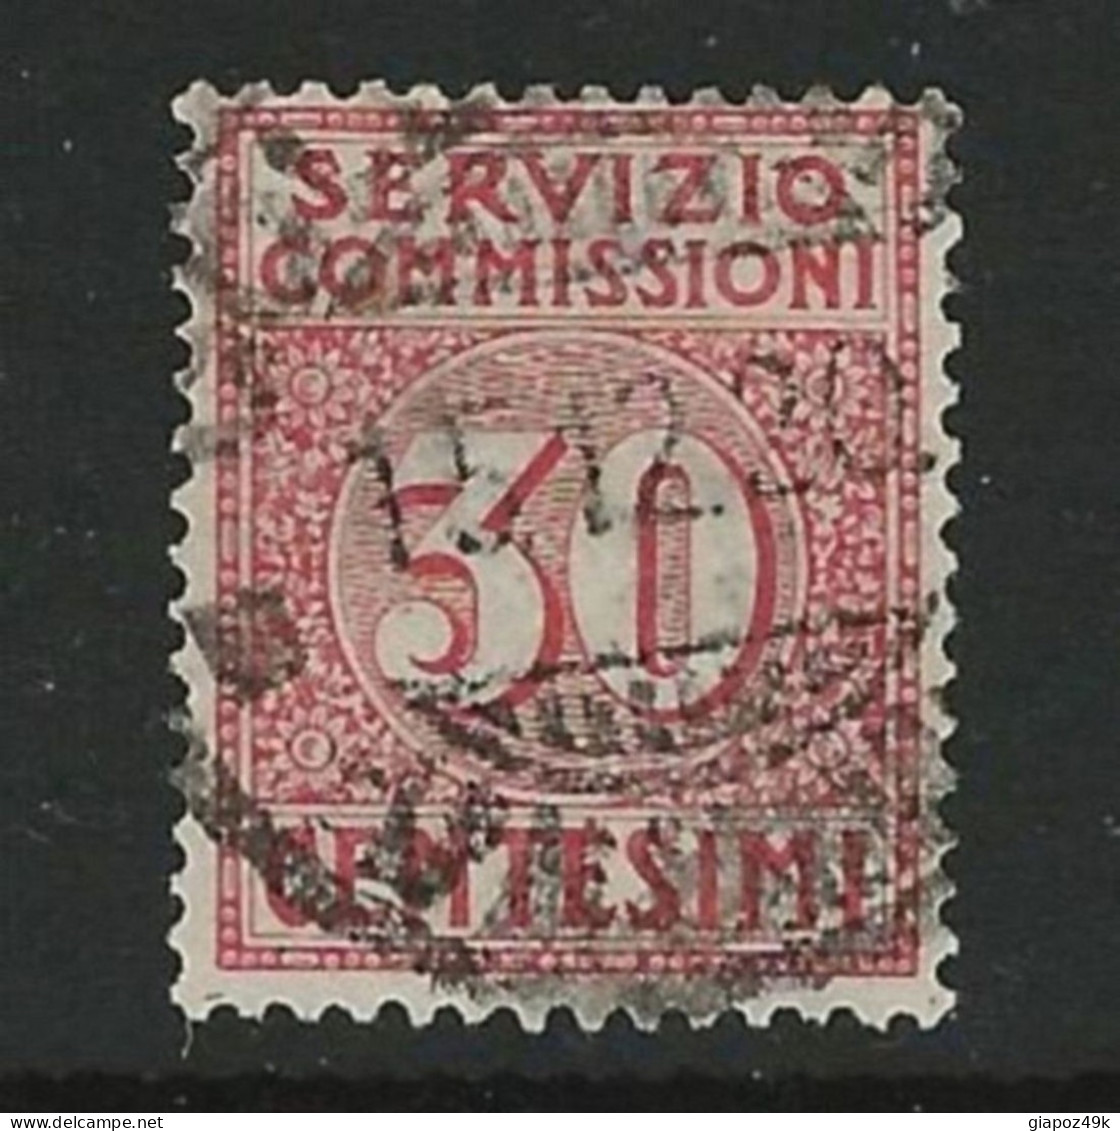 ● ITALIA REGNO 1913 ֍ SERVIZIO COMMISSIONI  ֍  N. 1 Usato ● Cat. 65 € ● Lotto N. 1930 ● - Taxe